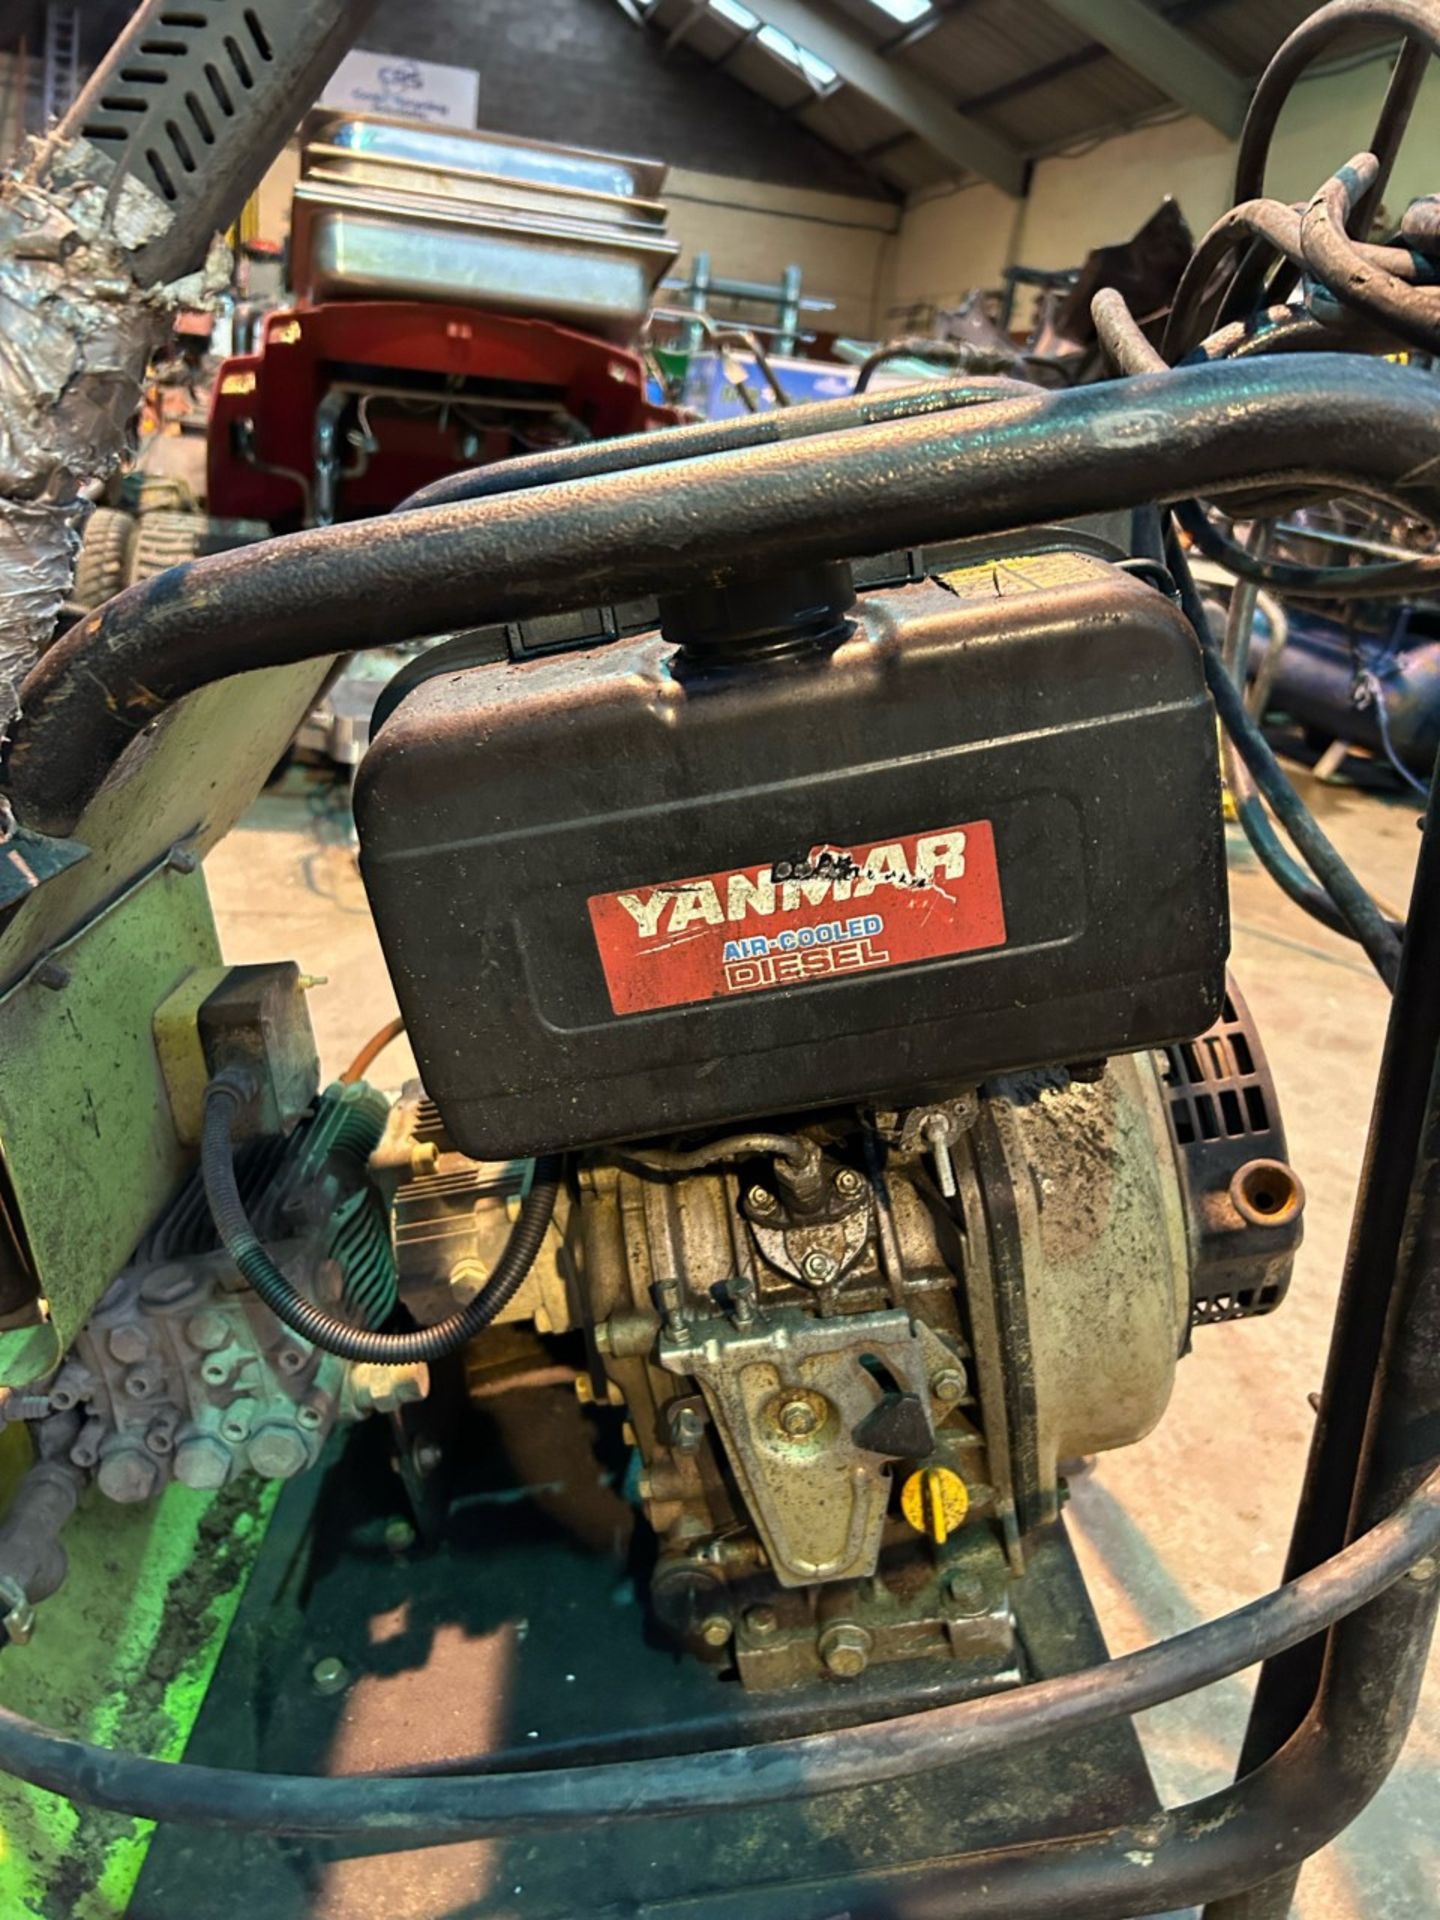 Yanmar air cooled diesel pressure washer. Working order. - Image 2 of 5